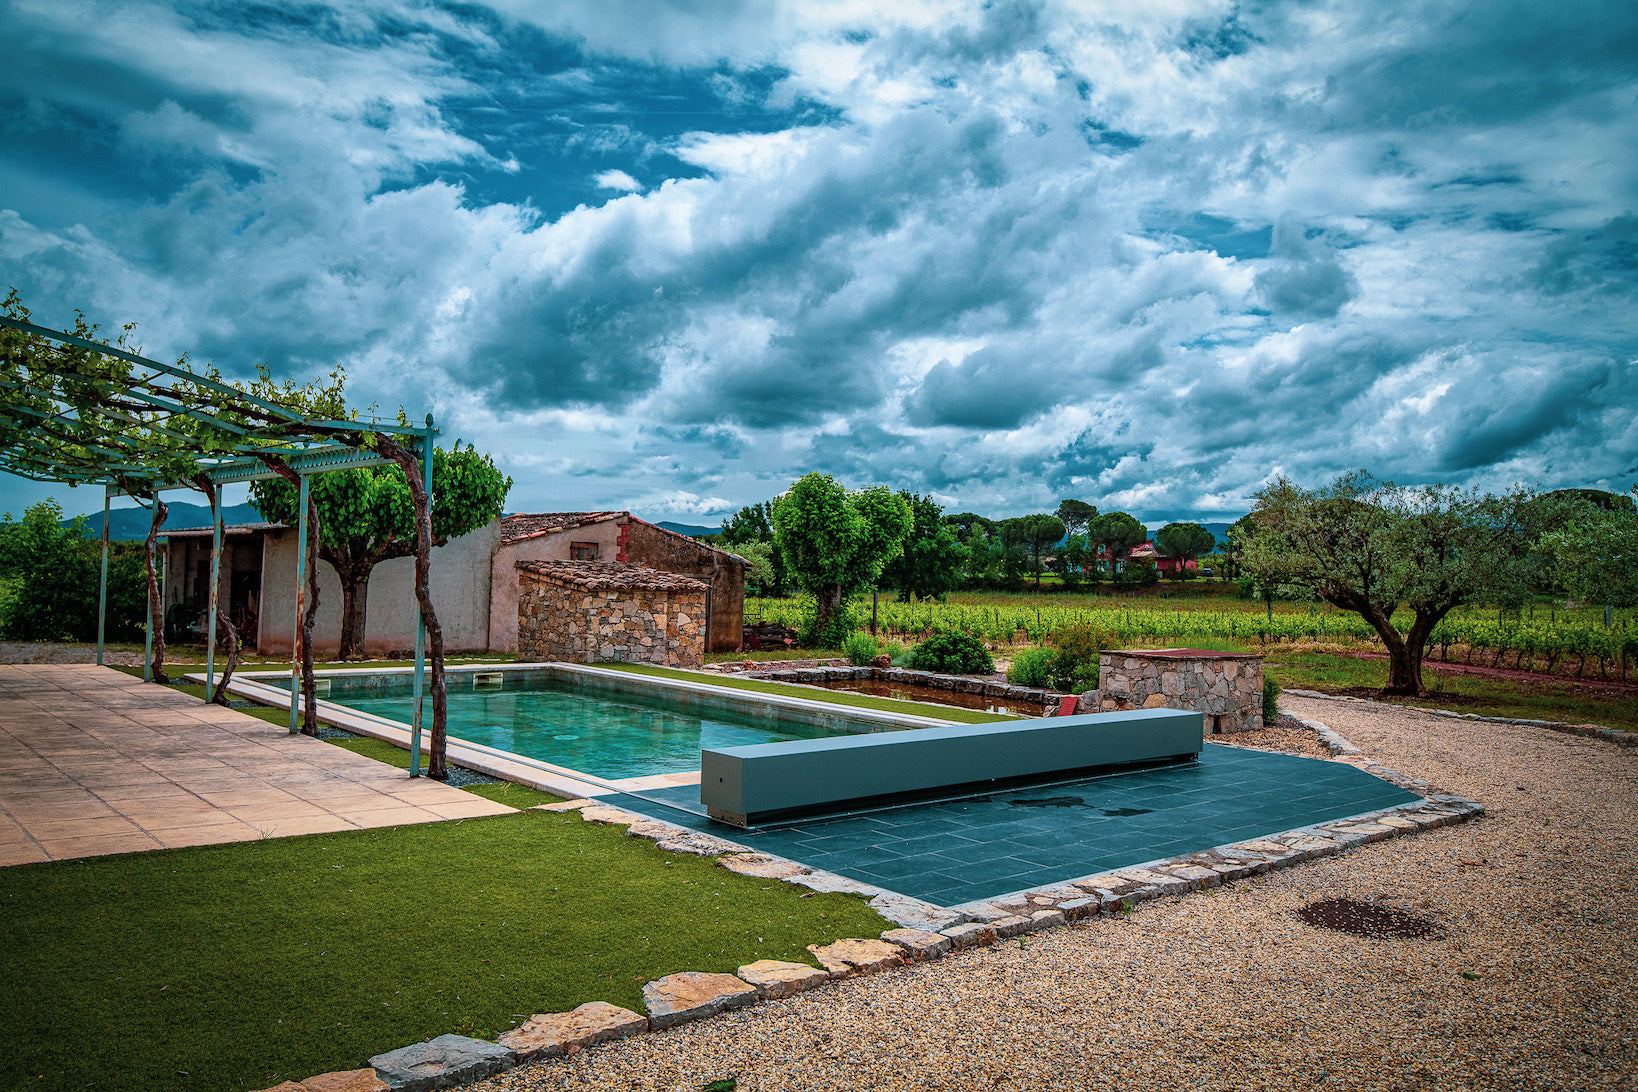 Pool in einem Weinbaugebiet mit Abdeckung und Haus im Hintergrund